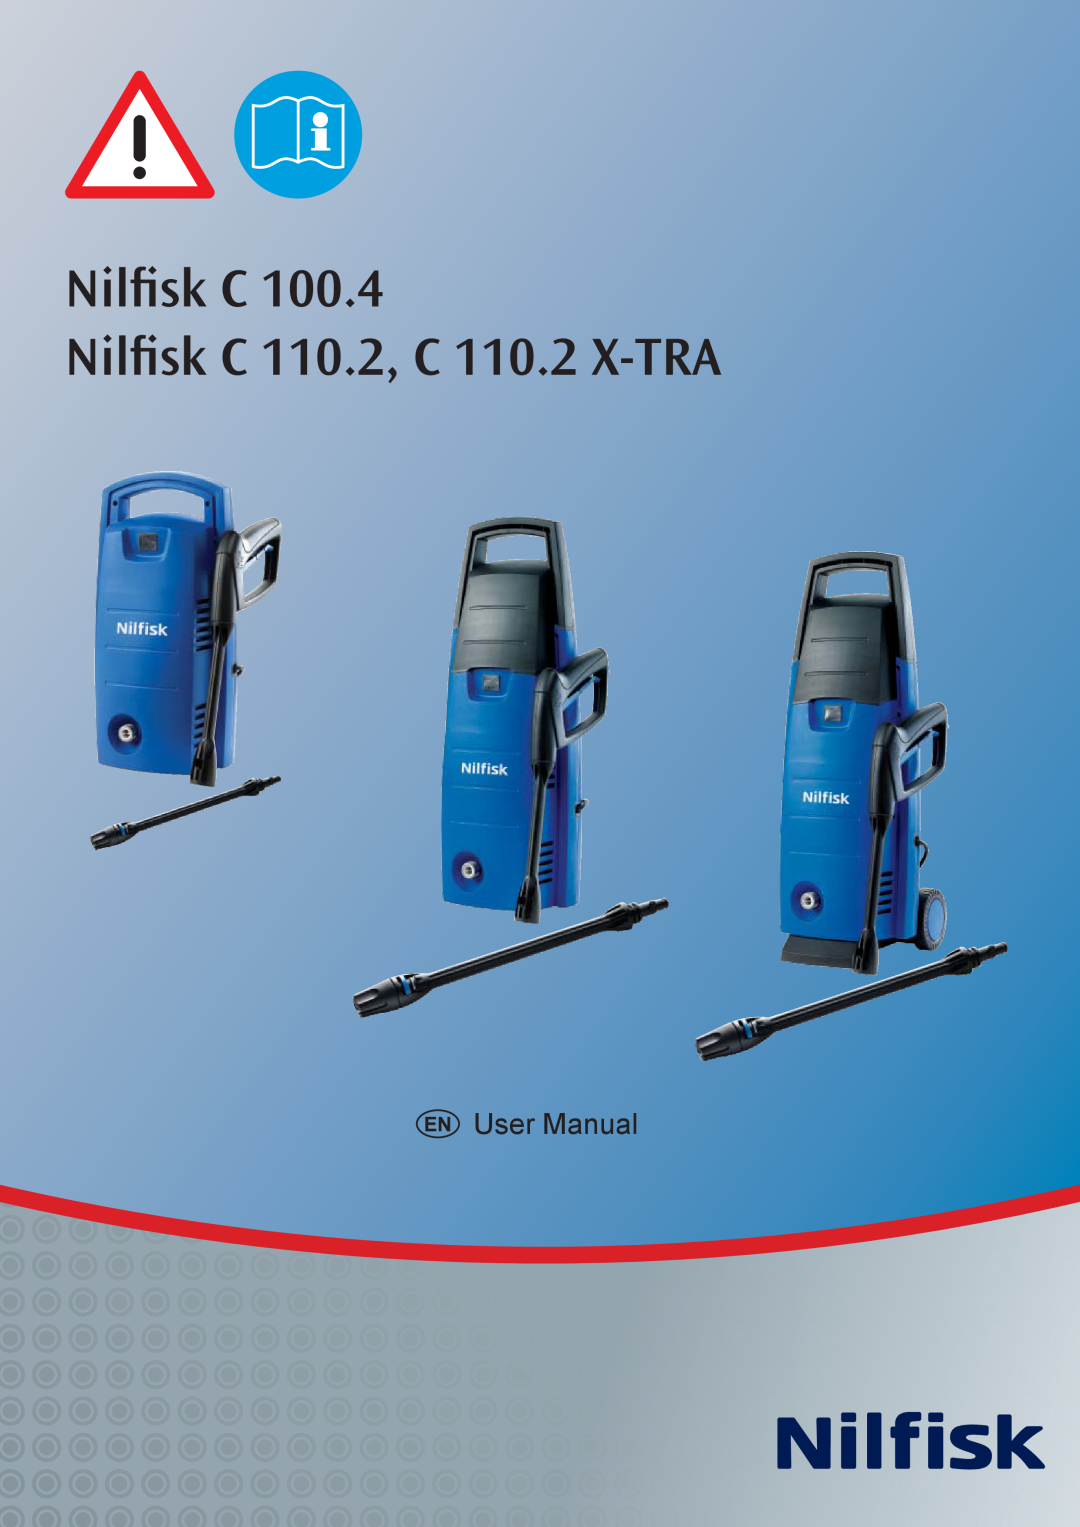 Nilfisk-ALTO Nilfisk C 100.4 user manual Nilﬁsk C Nilﬁsk C 110.2, C 110.2 X-TRA 